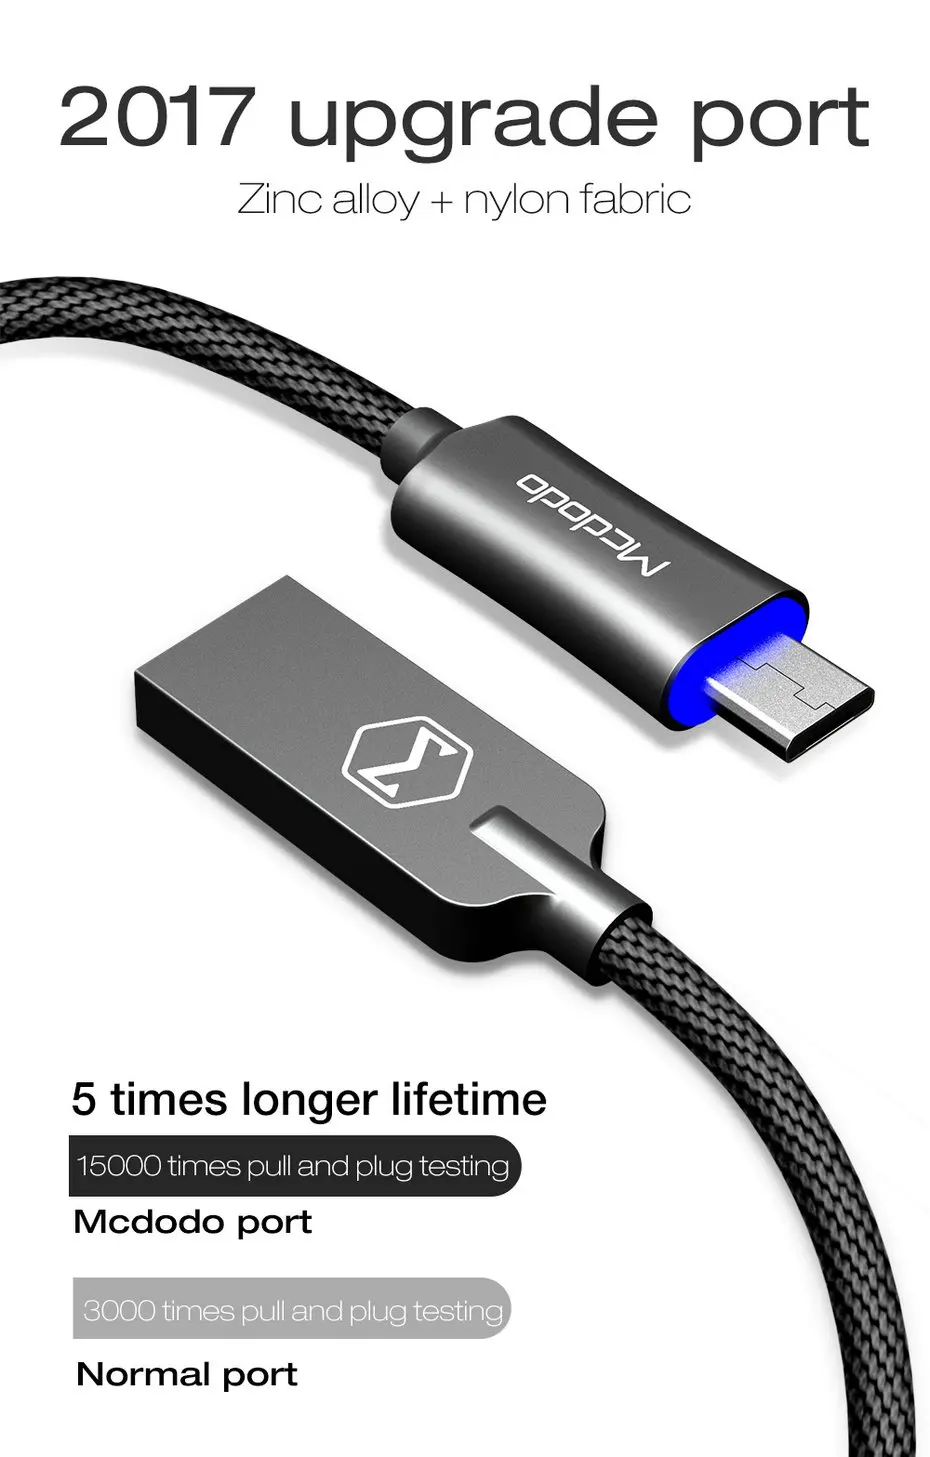 Mcdodo Micro USB кабель QC3.0 Быстрая зарядка нейлоновый USB кабель синхронизации данных для samsung Xiaomi huawei htc LG кабель для мобильного телефона